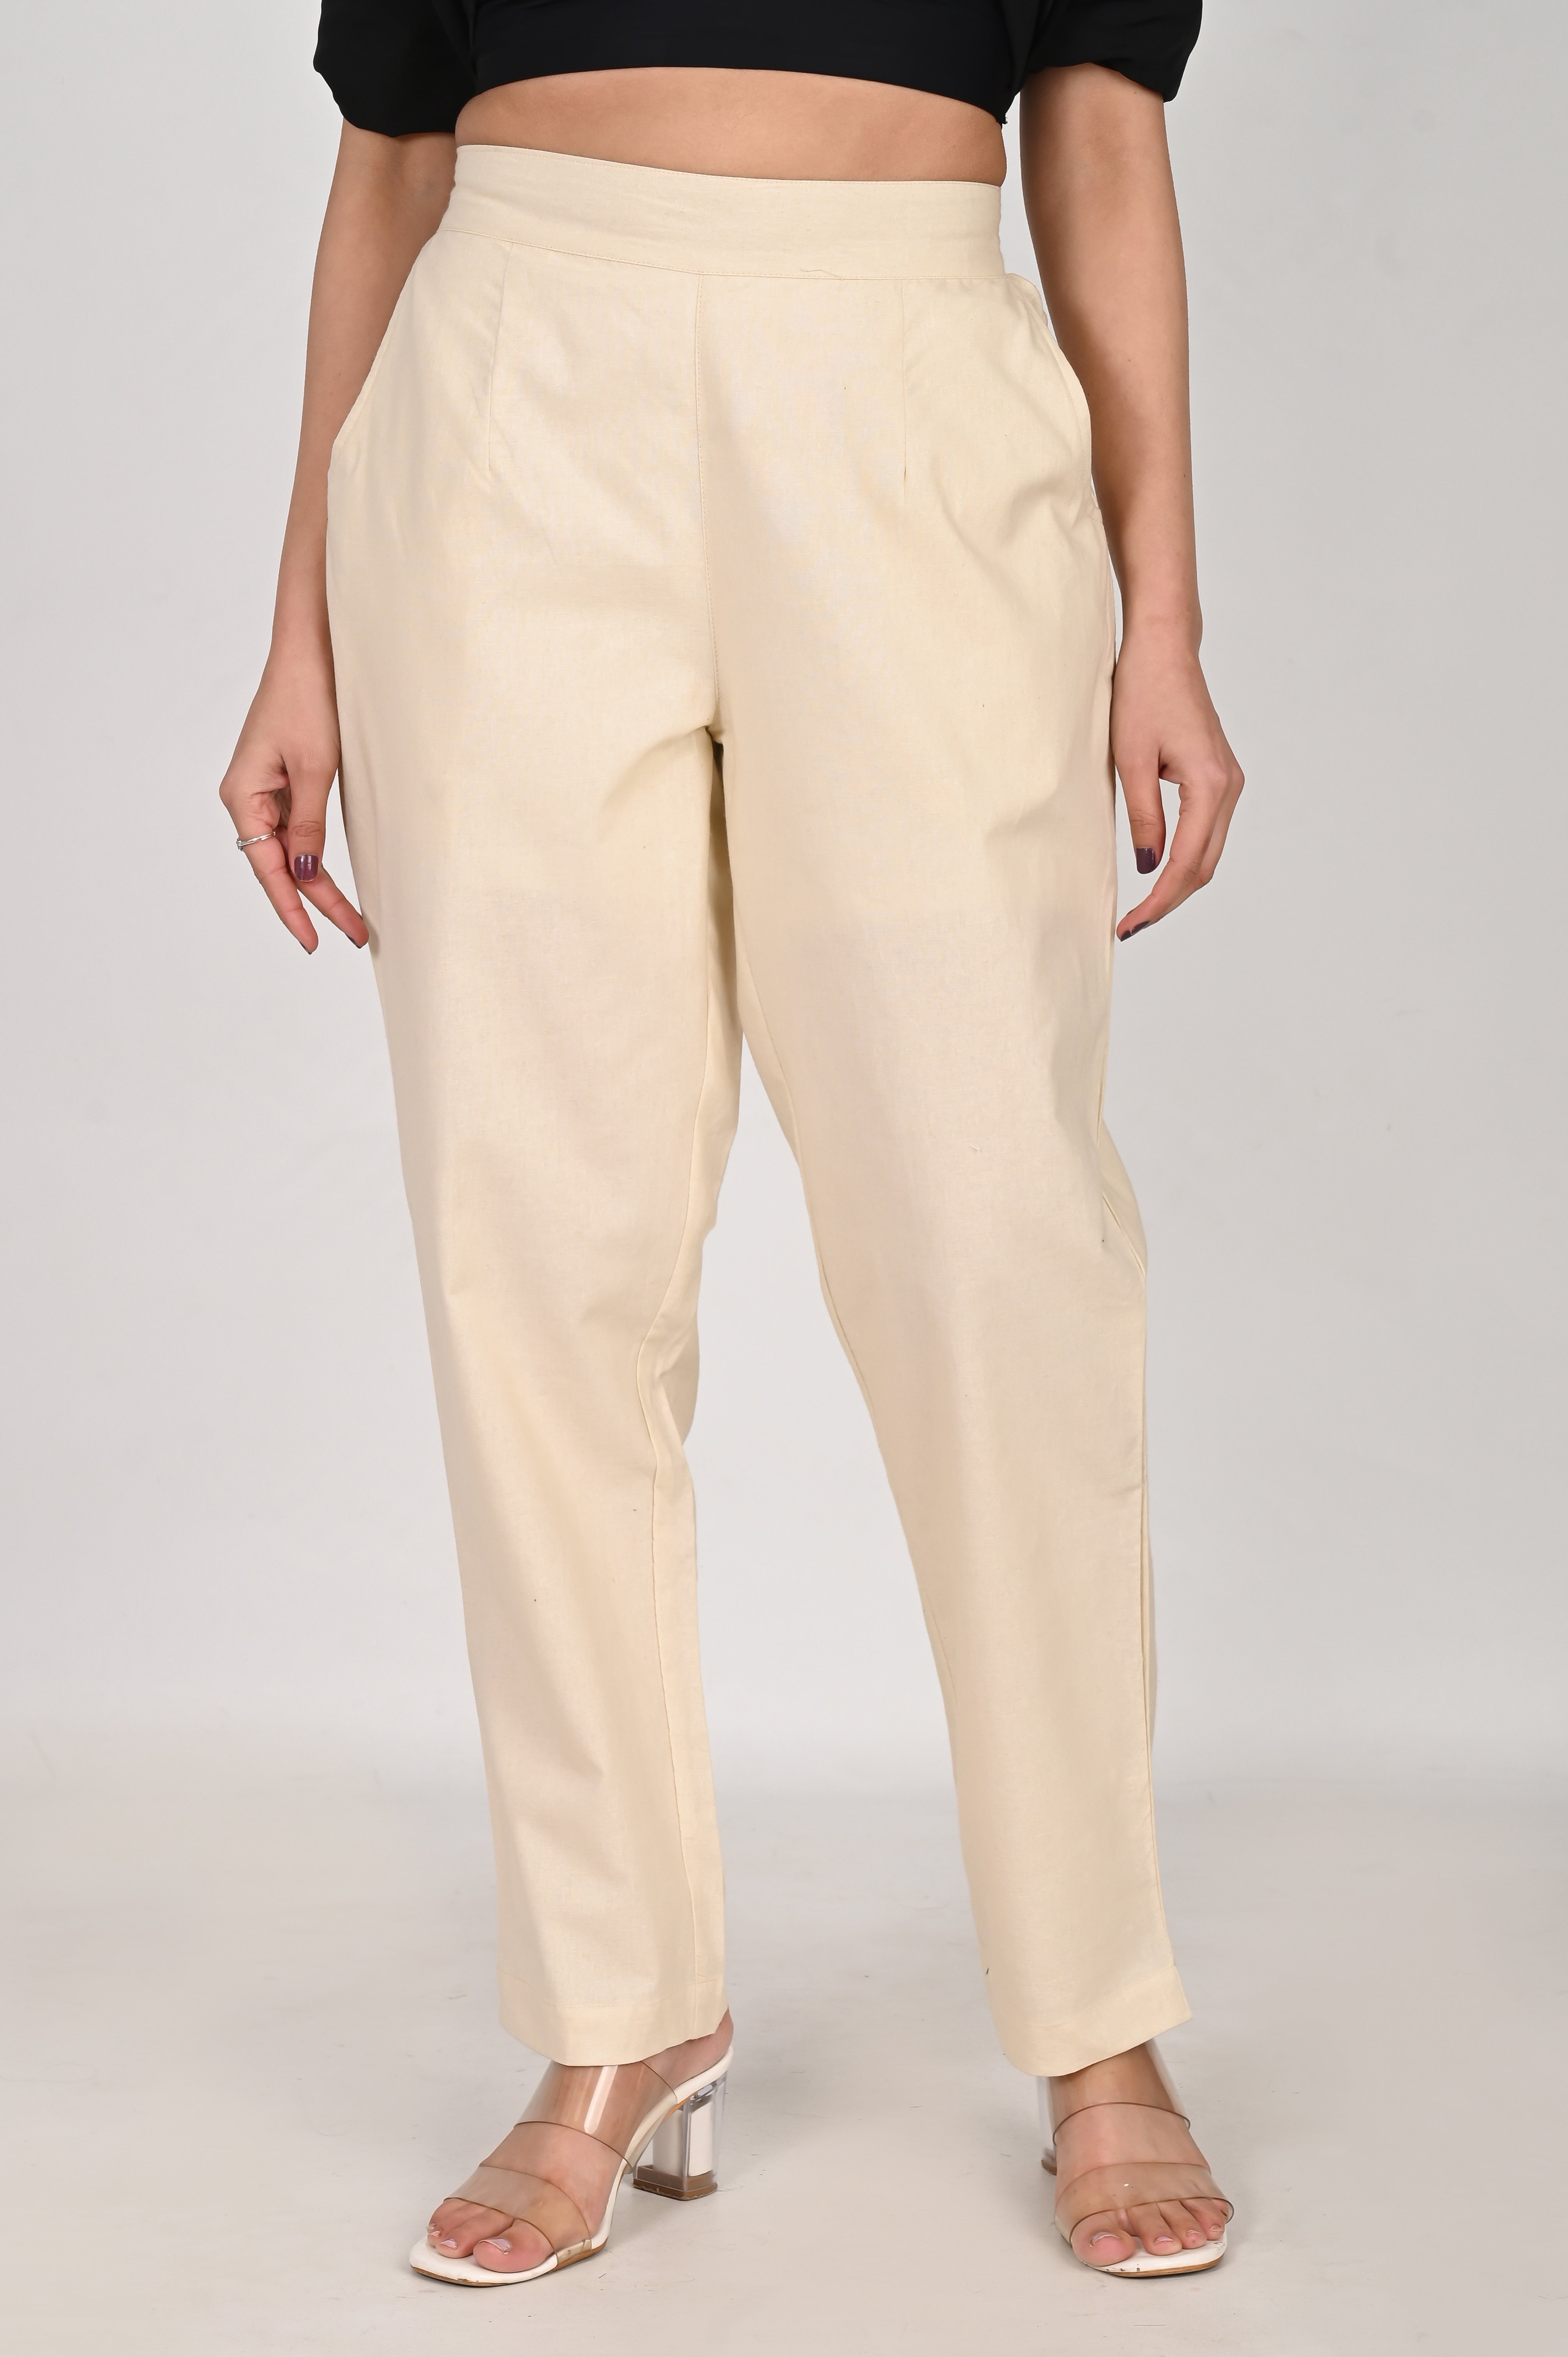 Grand Le Mar | Cotton Gurkha Trousers Sartorial & Practical Menswear